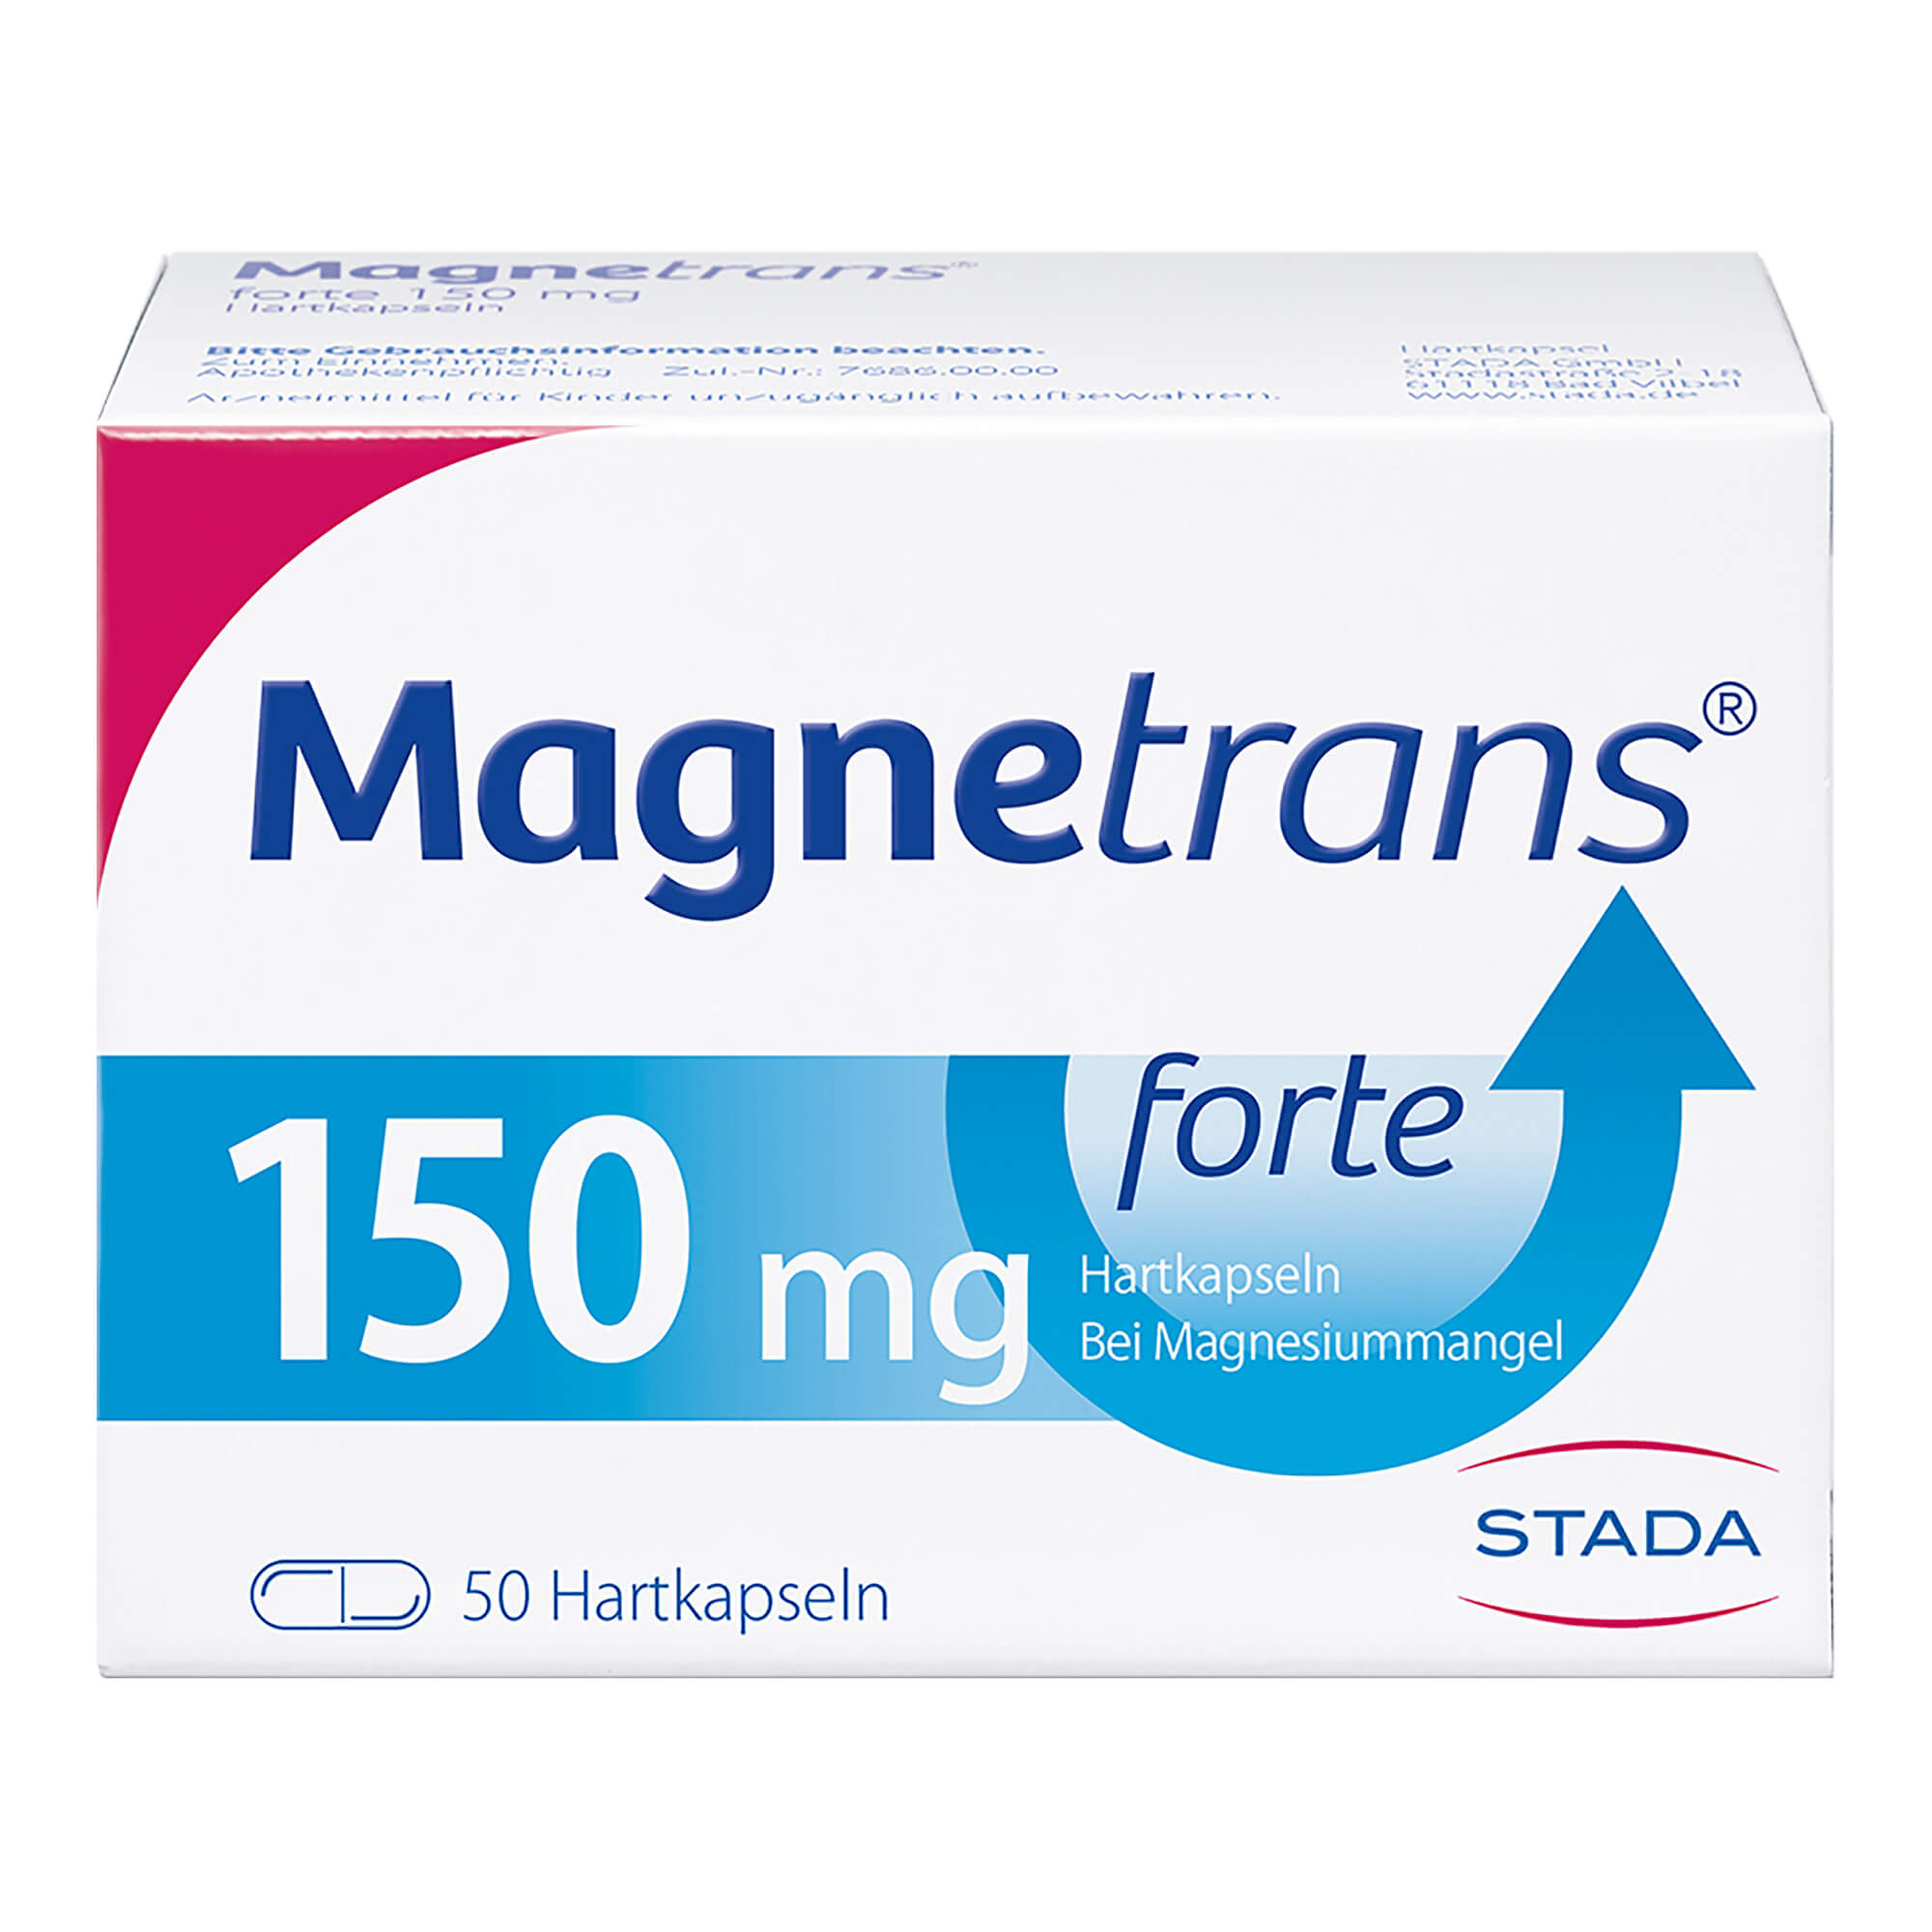 Mineralstoffpräparat zur Behandlung von Magnesiummangel.